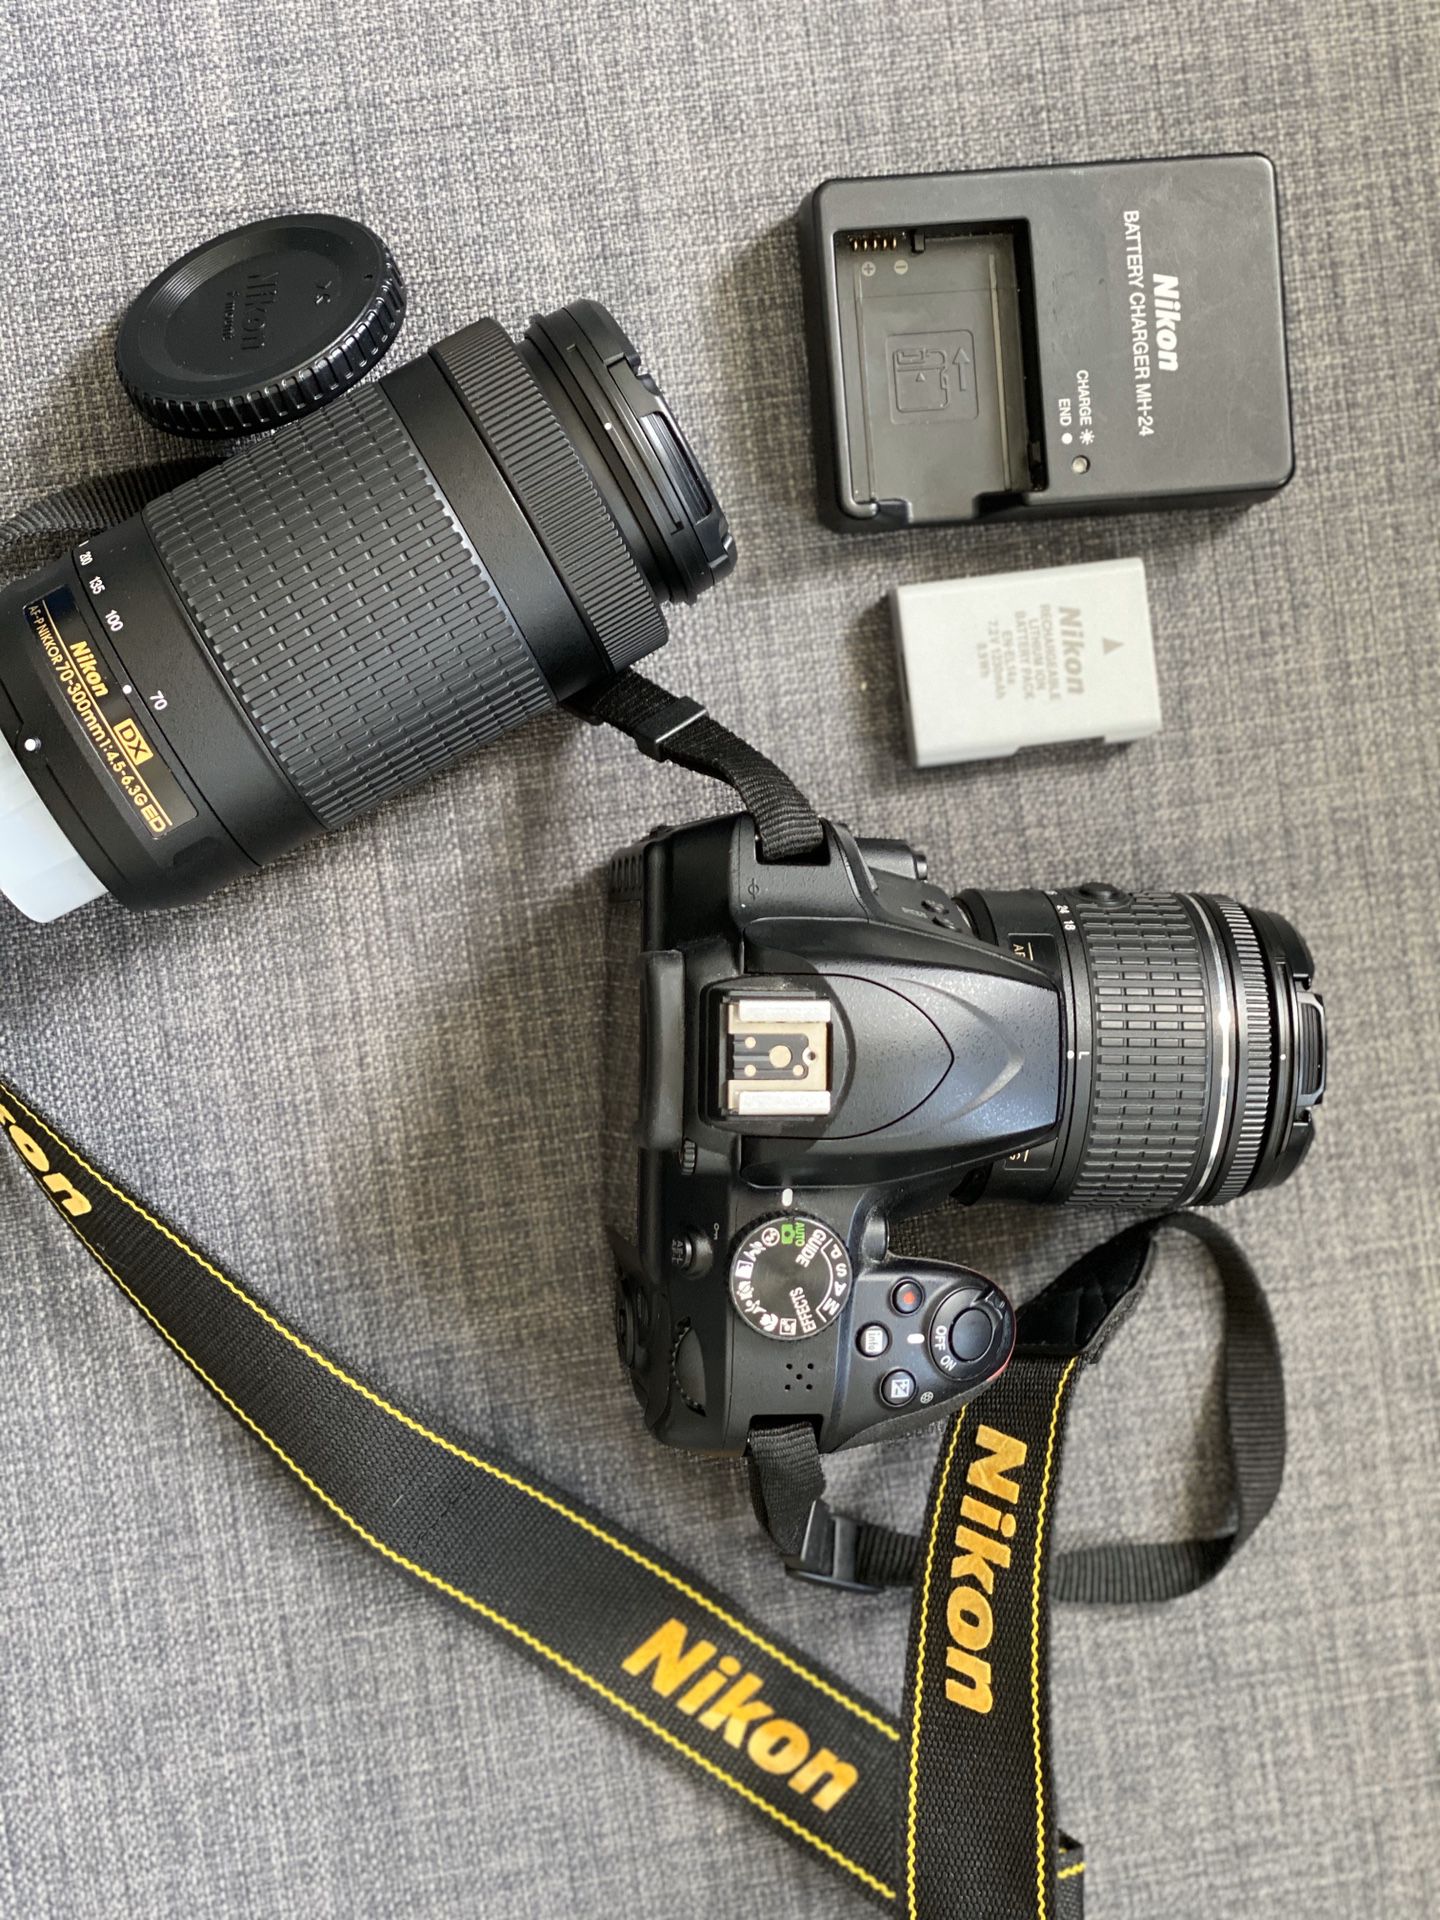 Bundle: Nikon D3400 + 2 lenses + rechargeable battery + battery charger